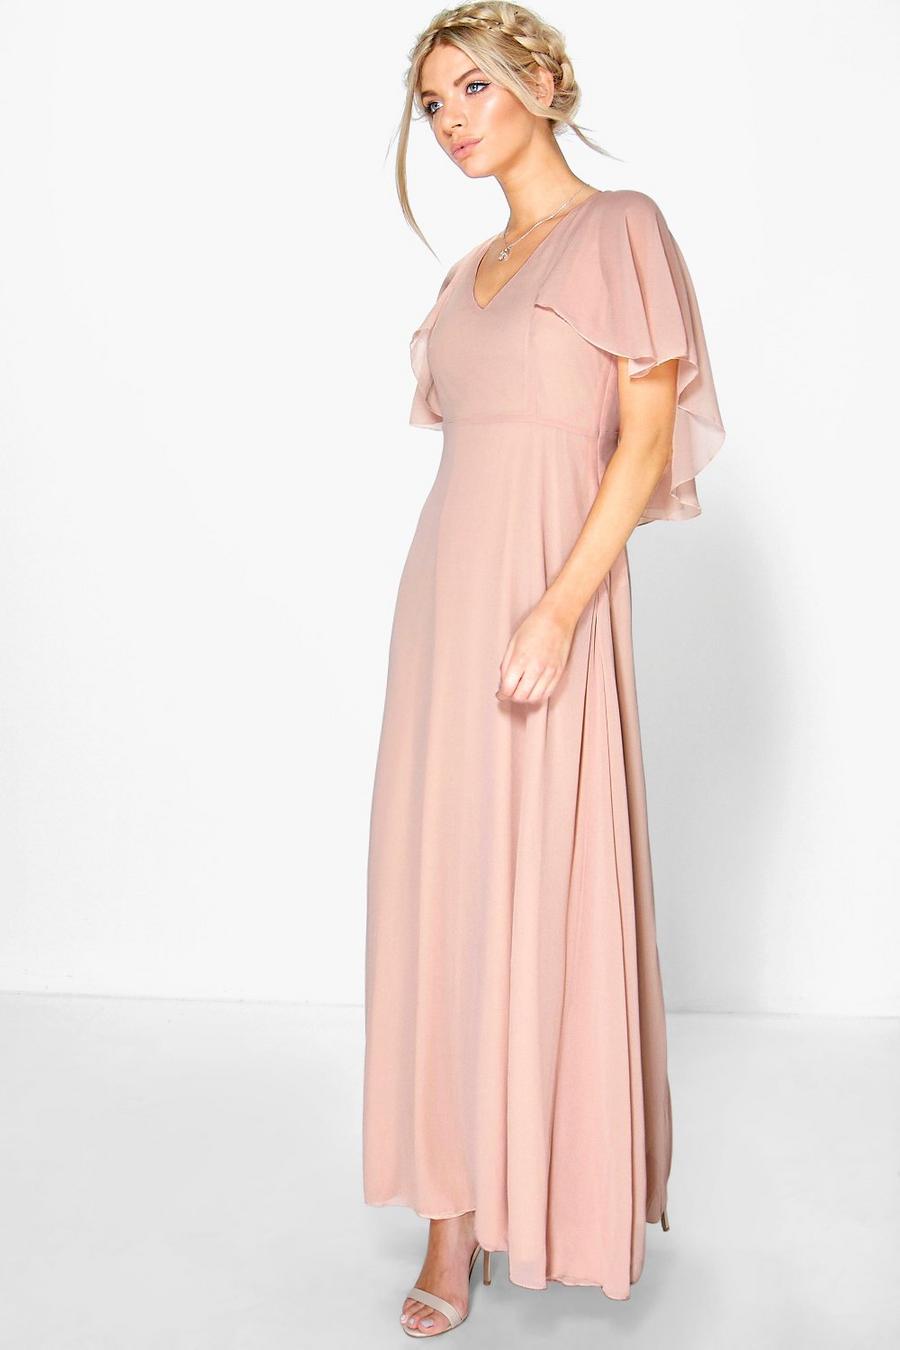 סמוק rosa שמלת מקסי מבד שיפון לשושבינה עם שרוולי שכמייה image number 1